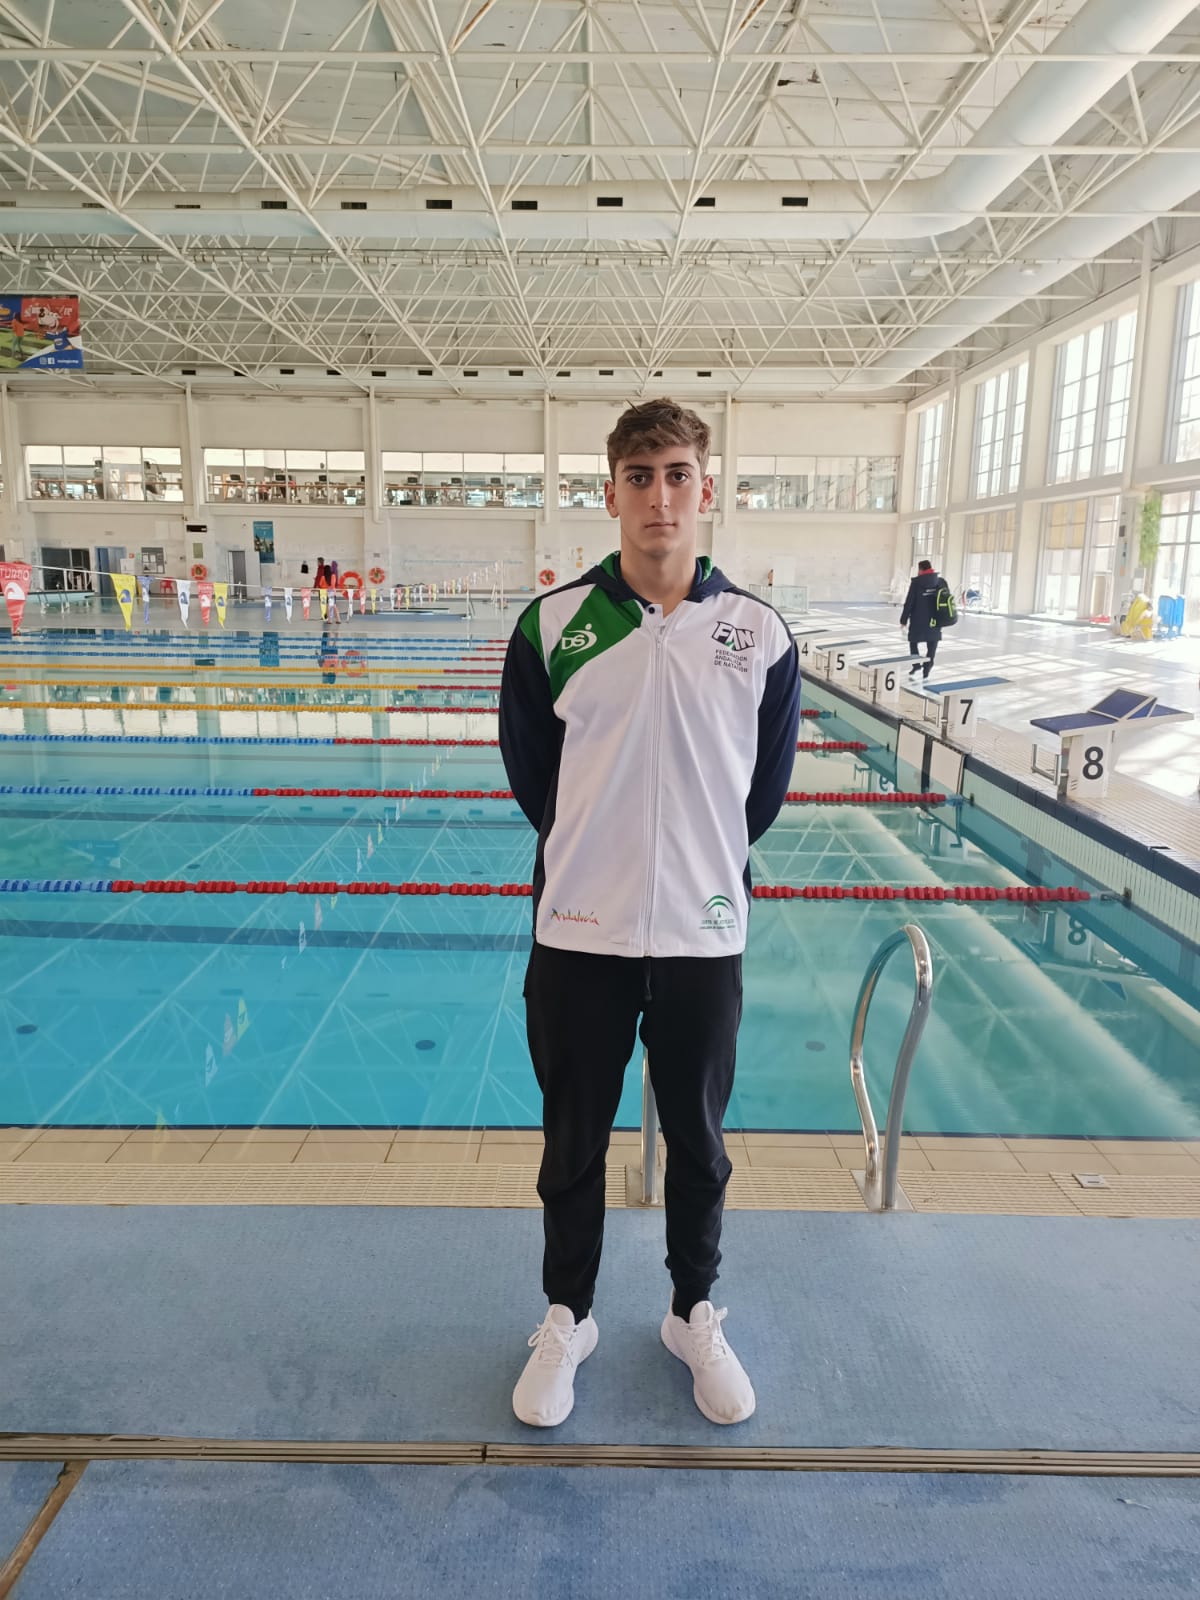 El utrerano Jorge Pérez es seleccionado para representar a Andalucía en el X Campeonato de natación de España